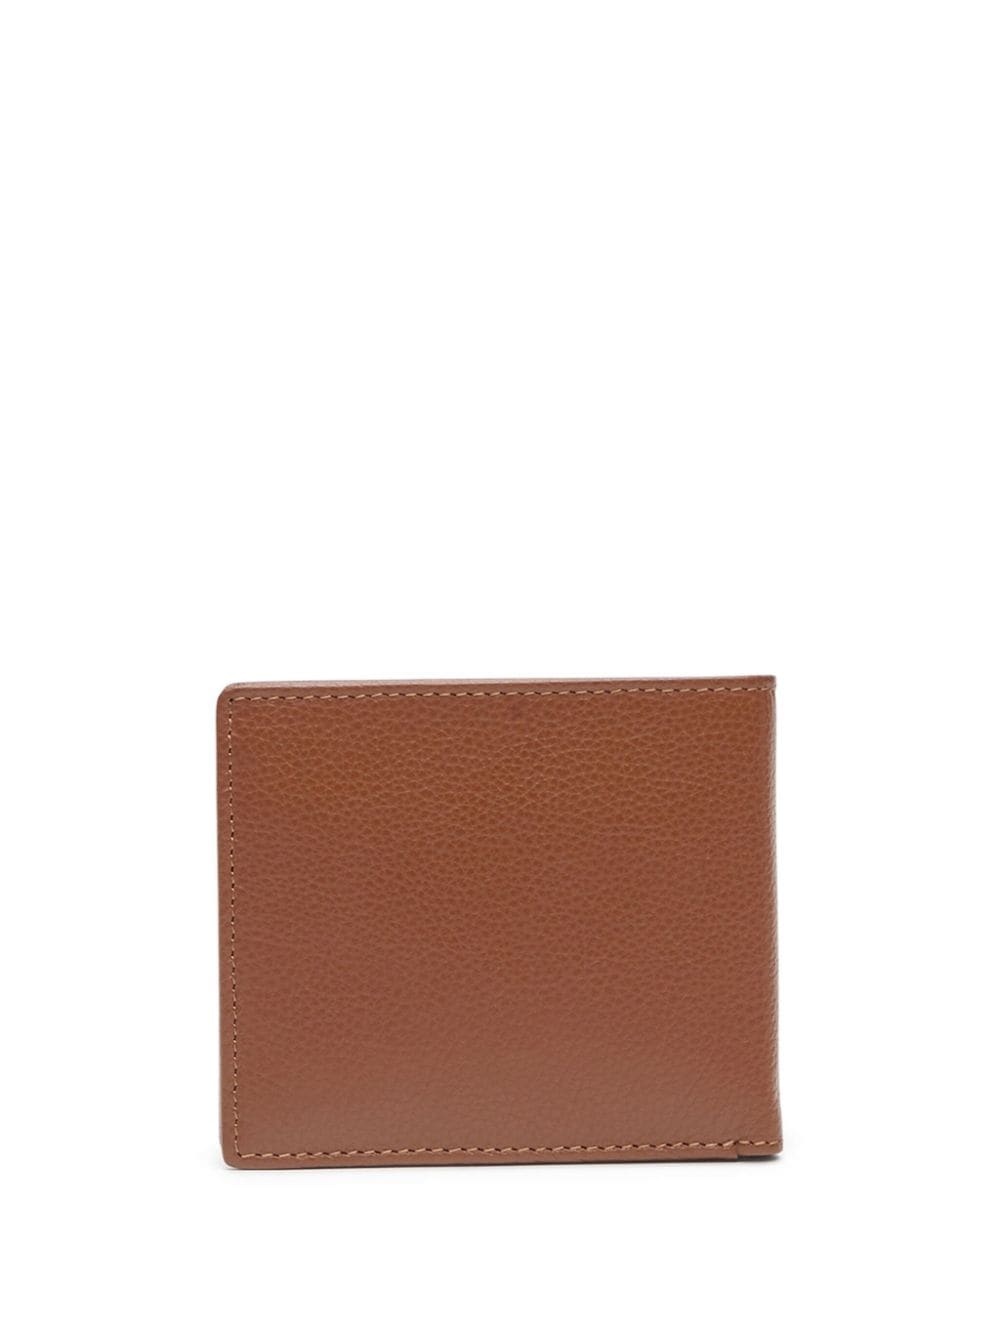 Medal-D leather wallet - 2